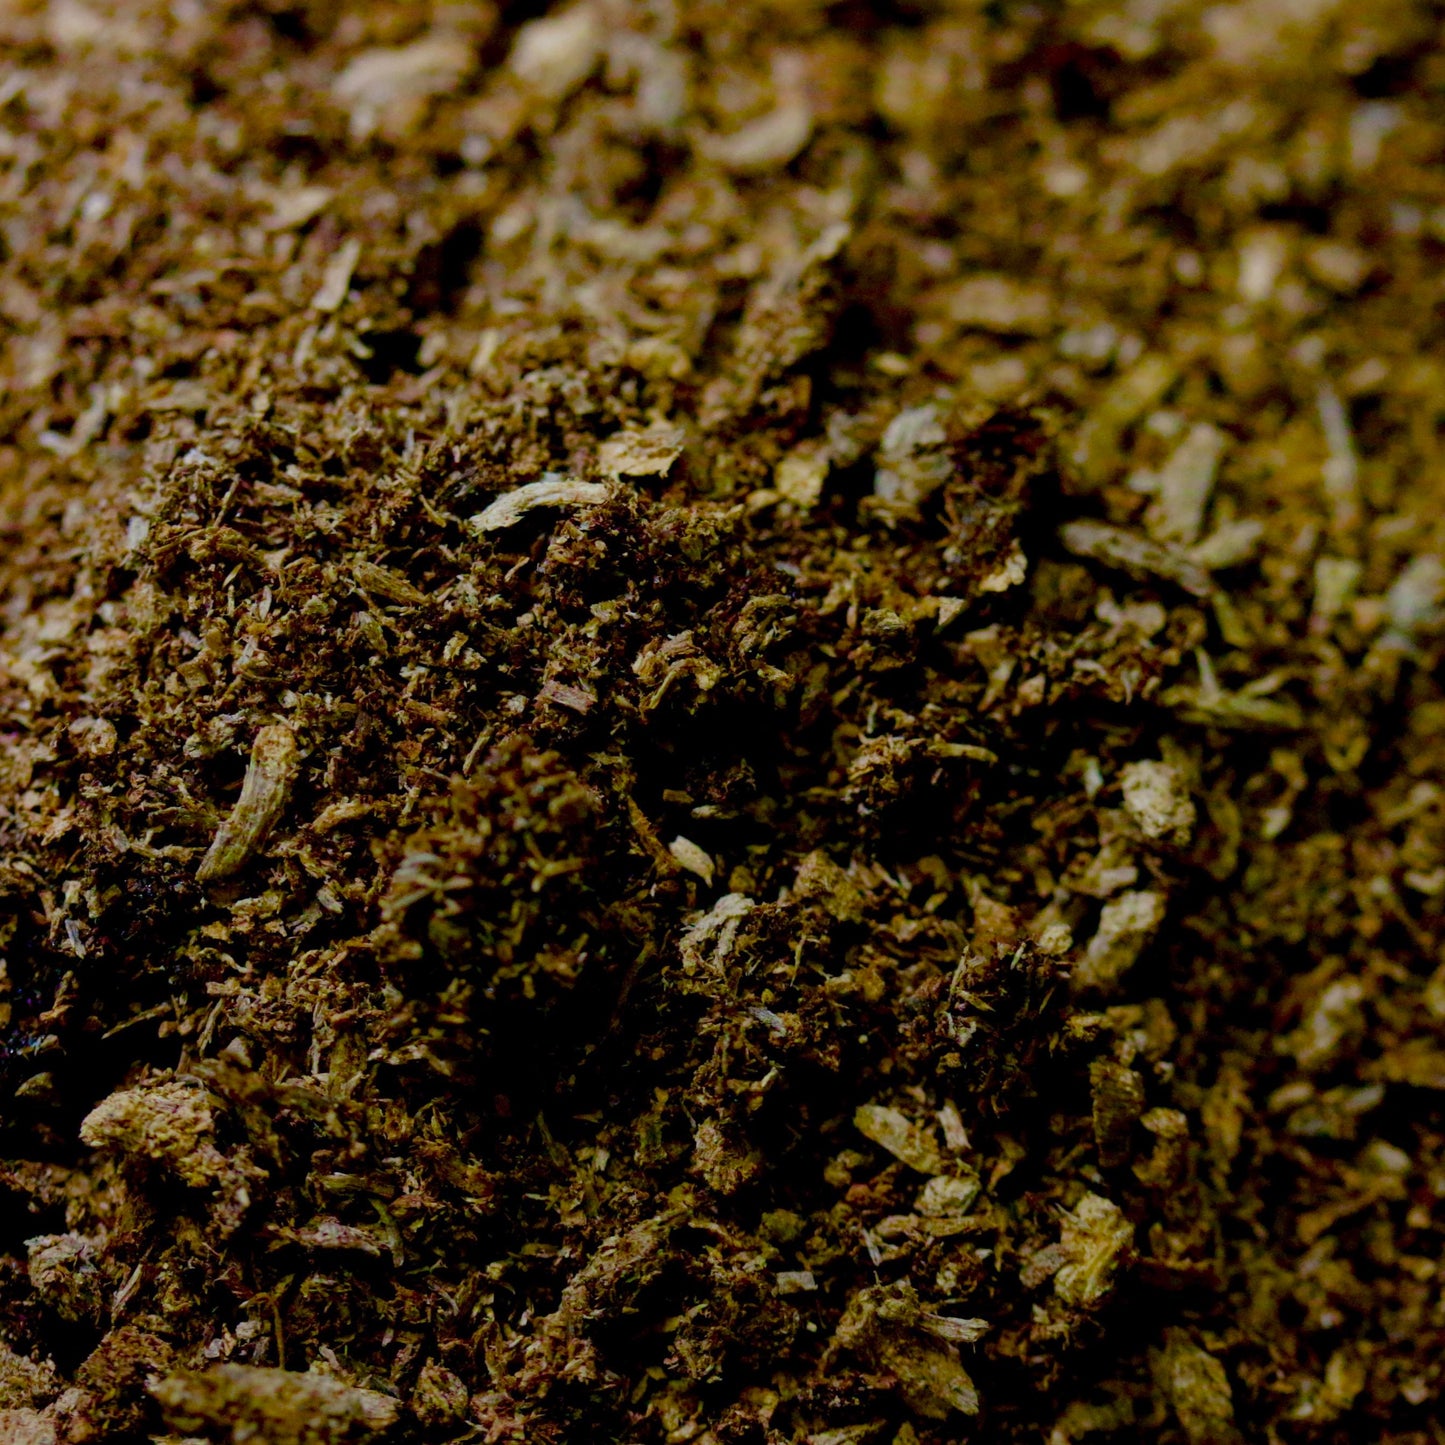 Flake Soil